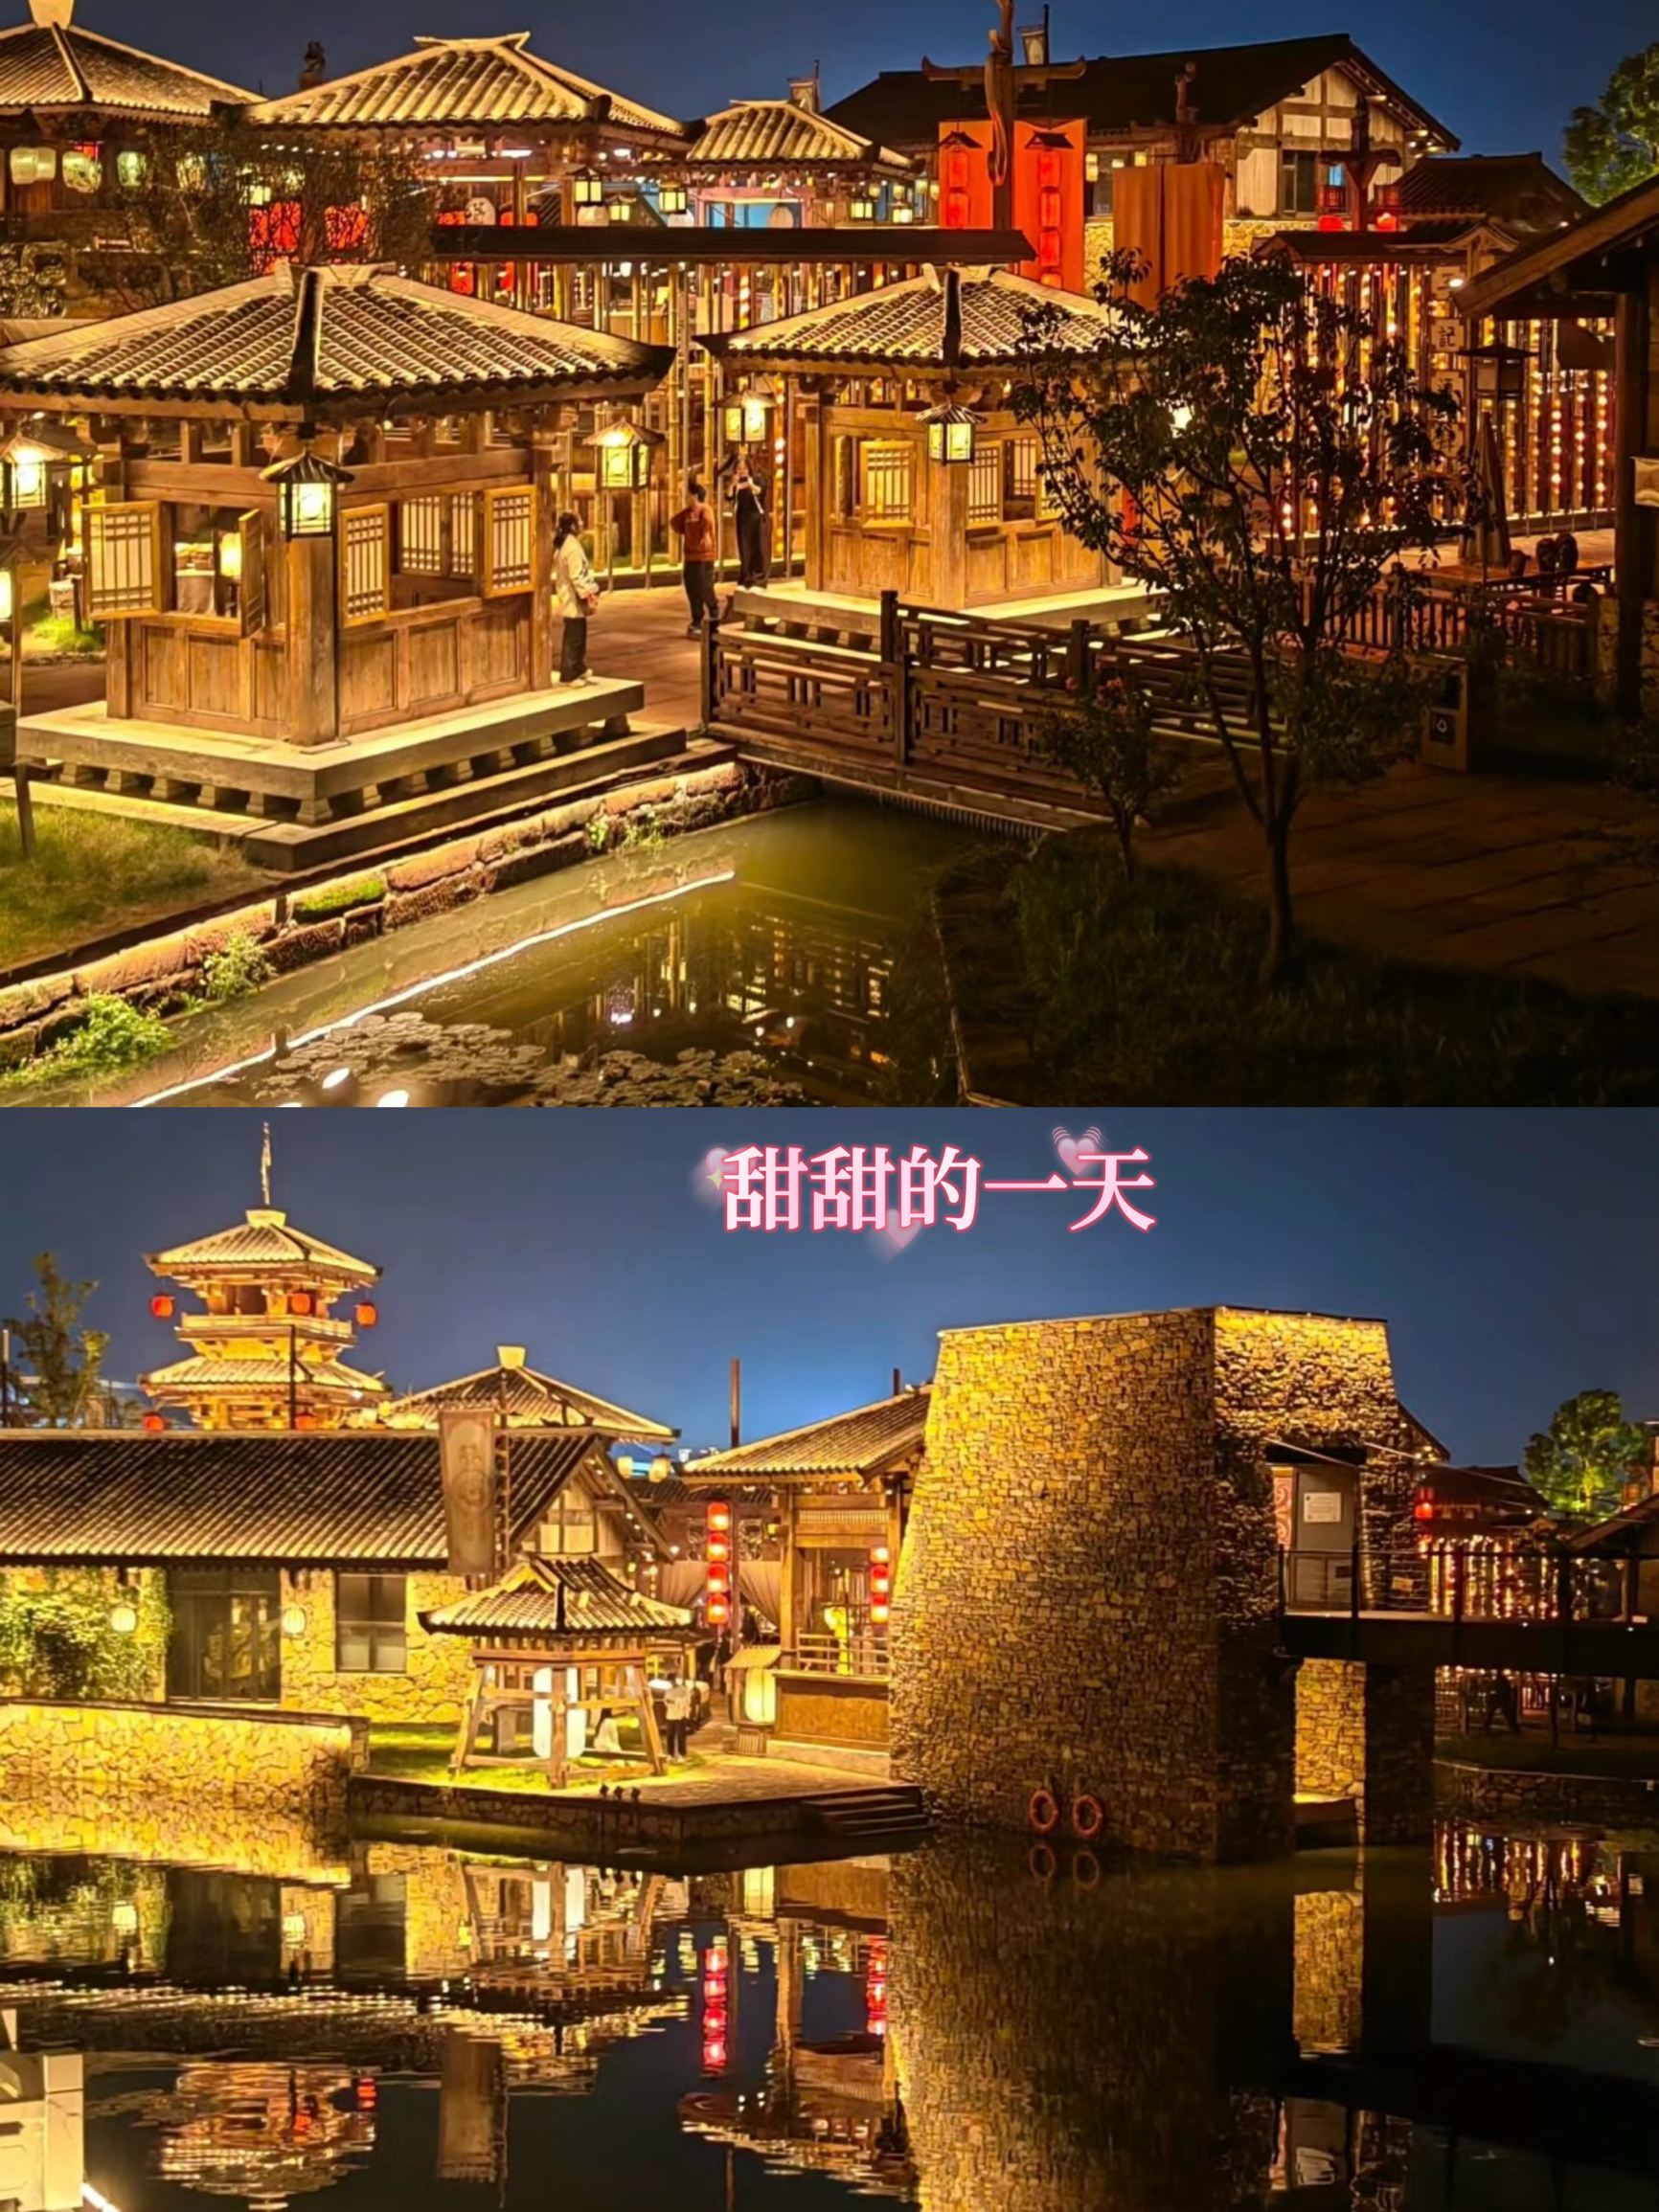 传说中的“小丽江”湖北莫愁村